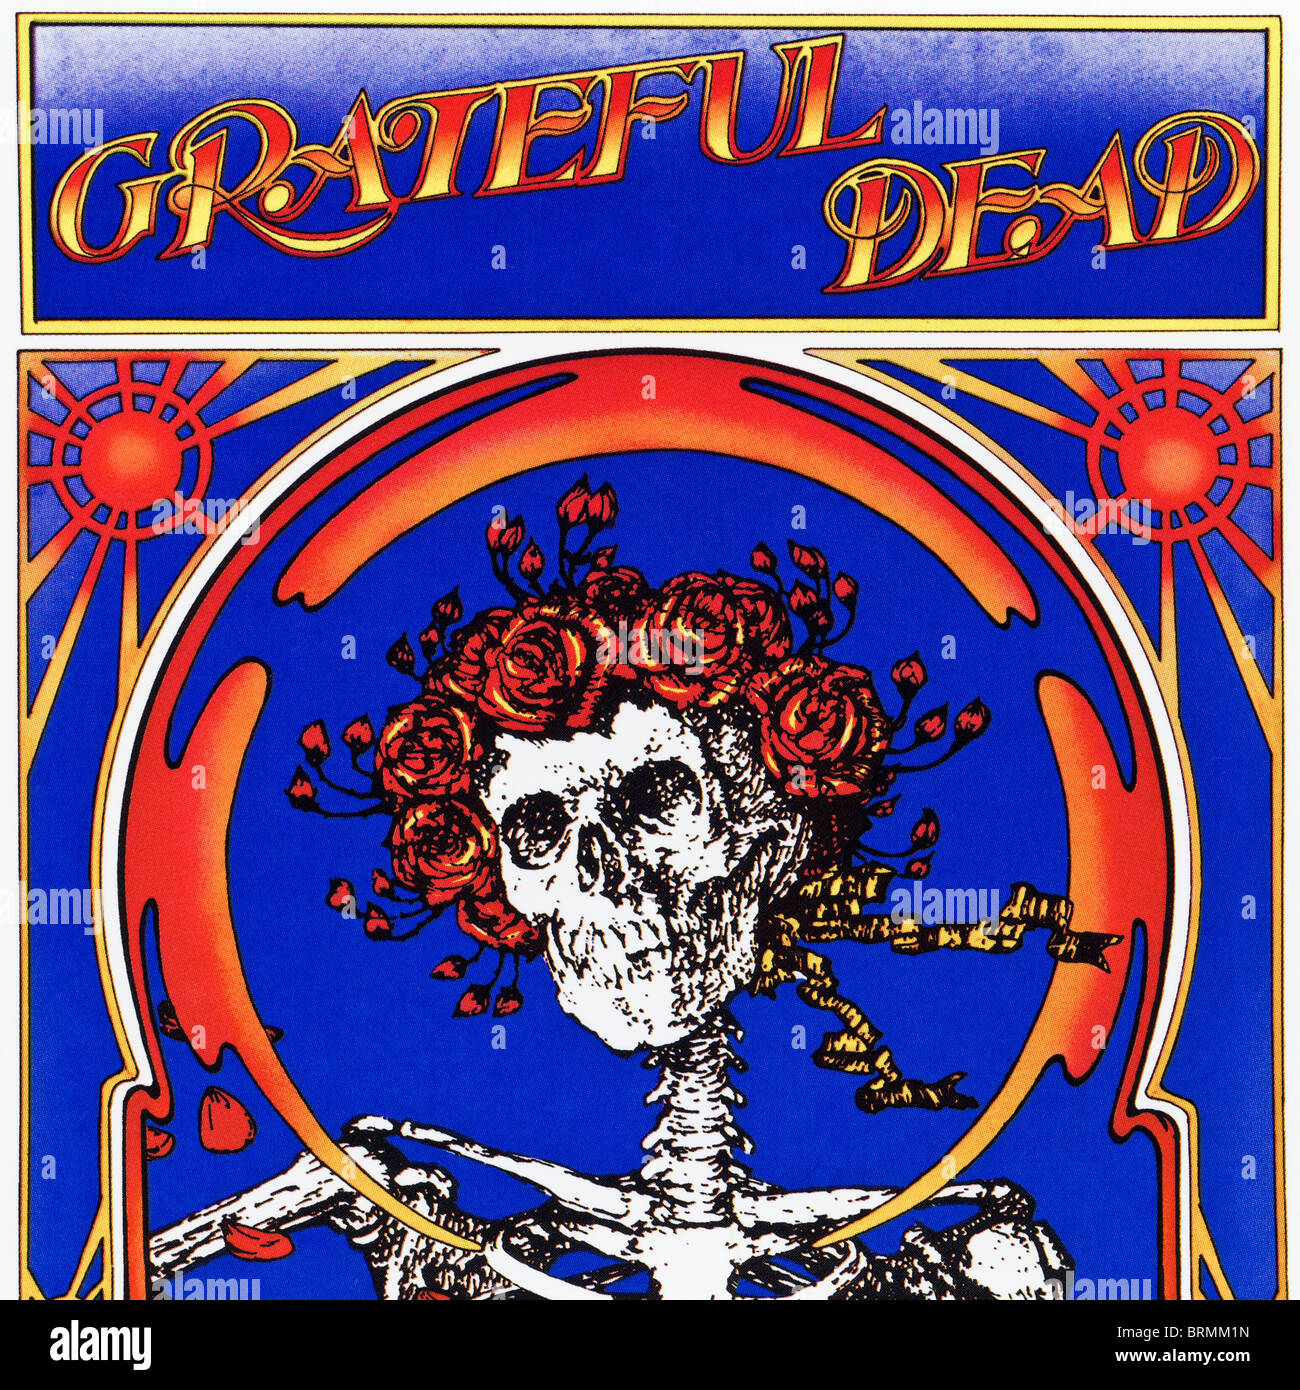 Grateful Dead The Grateful Dead